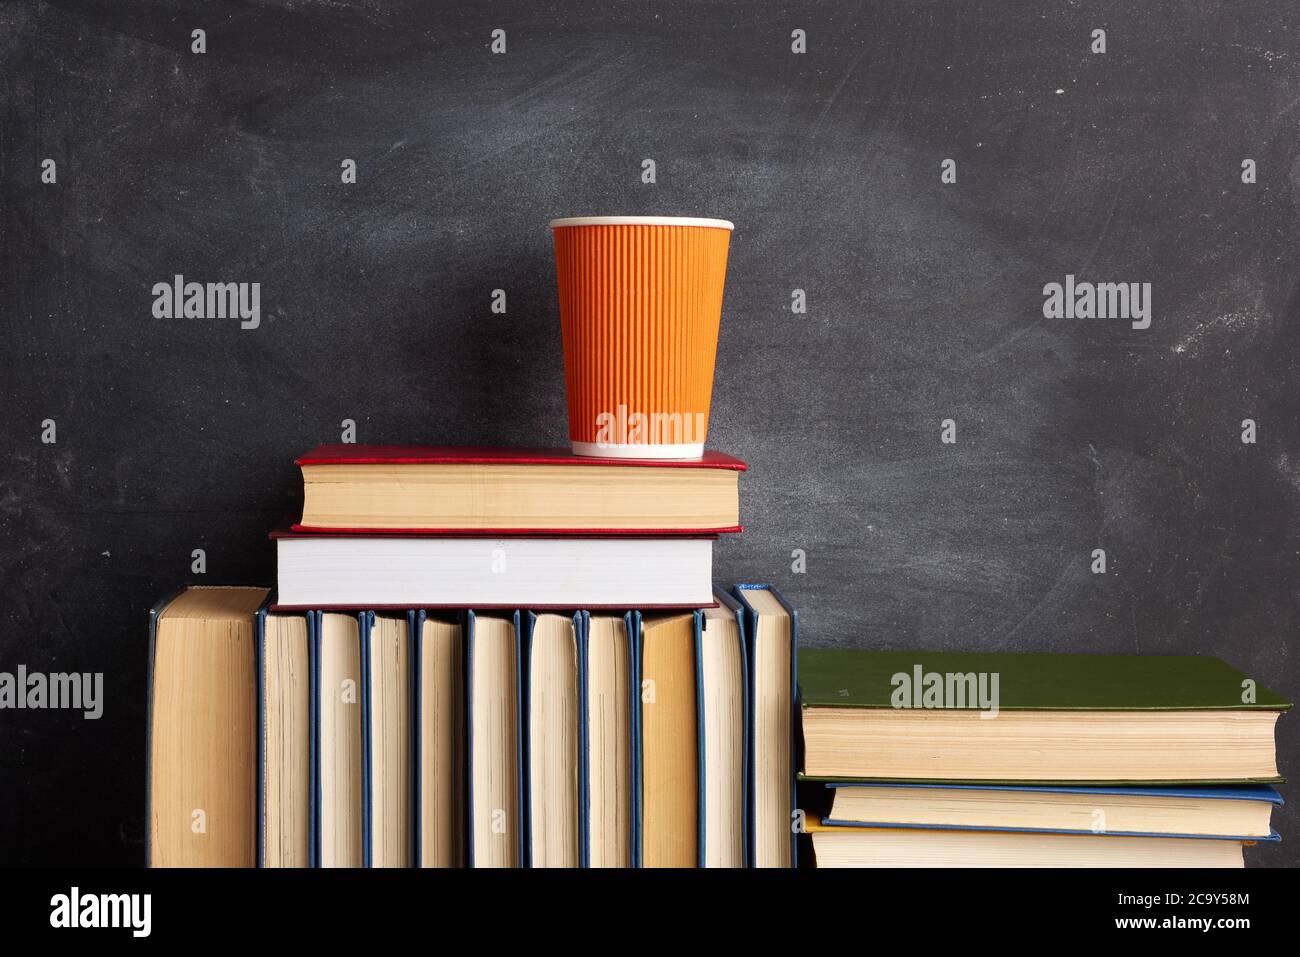 pile de différents livres et une tasse jetable orange avec du café sur fond noir tableau de craie, gros plan Banque D'Images